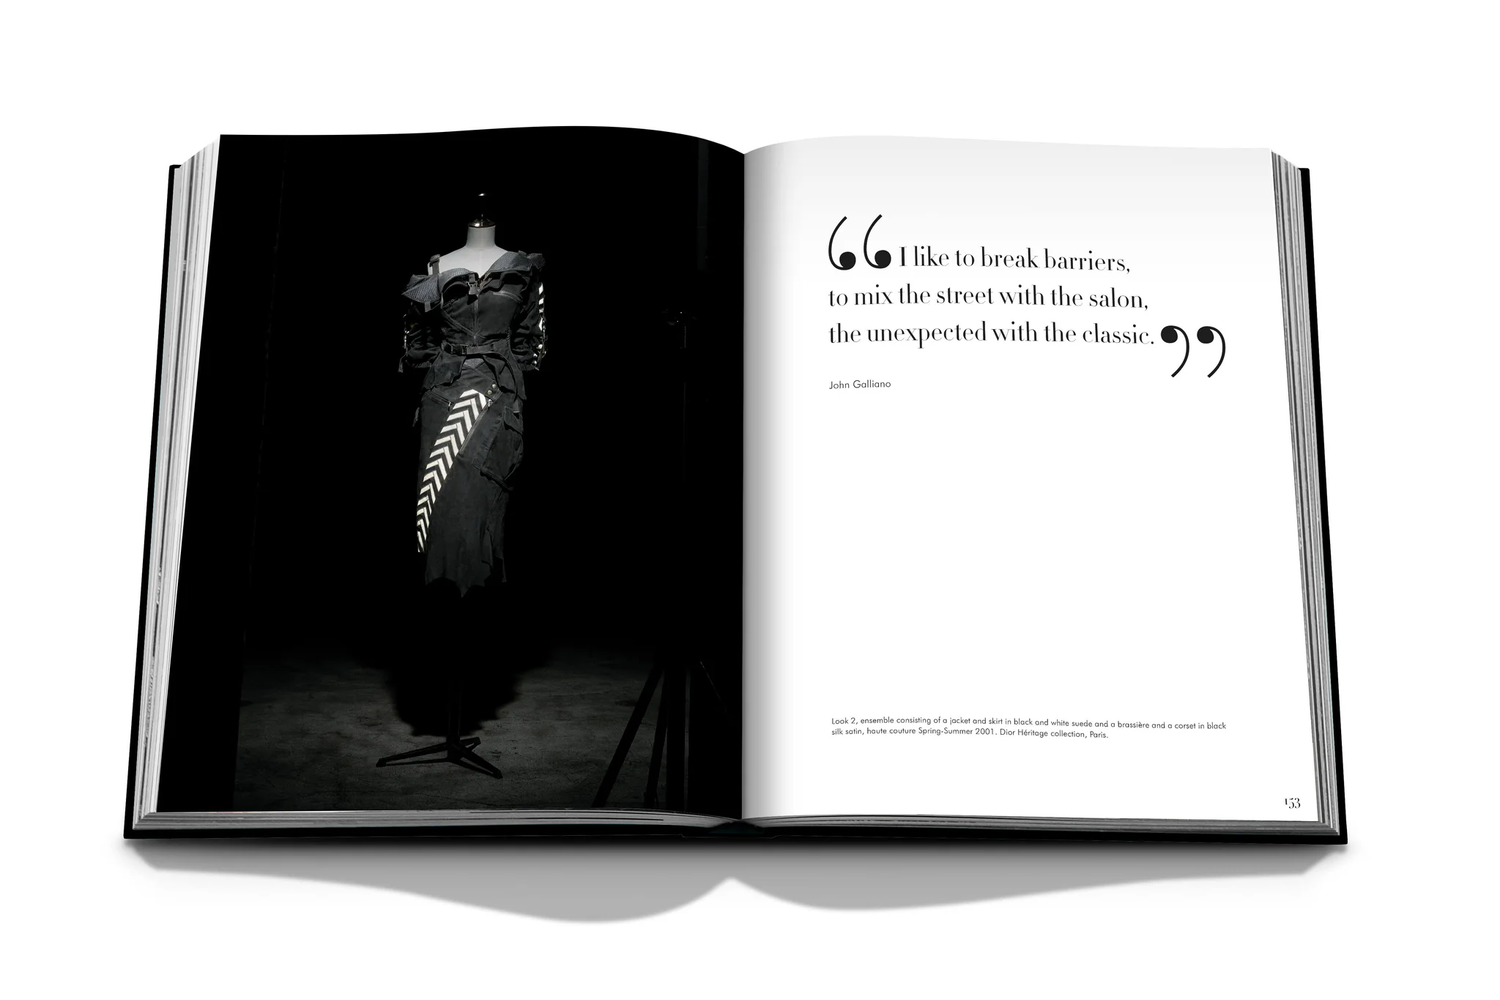 Book - Louis Vuitton: Virgil Abloh (Classic Cartoon Cover) – Empty Vase